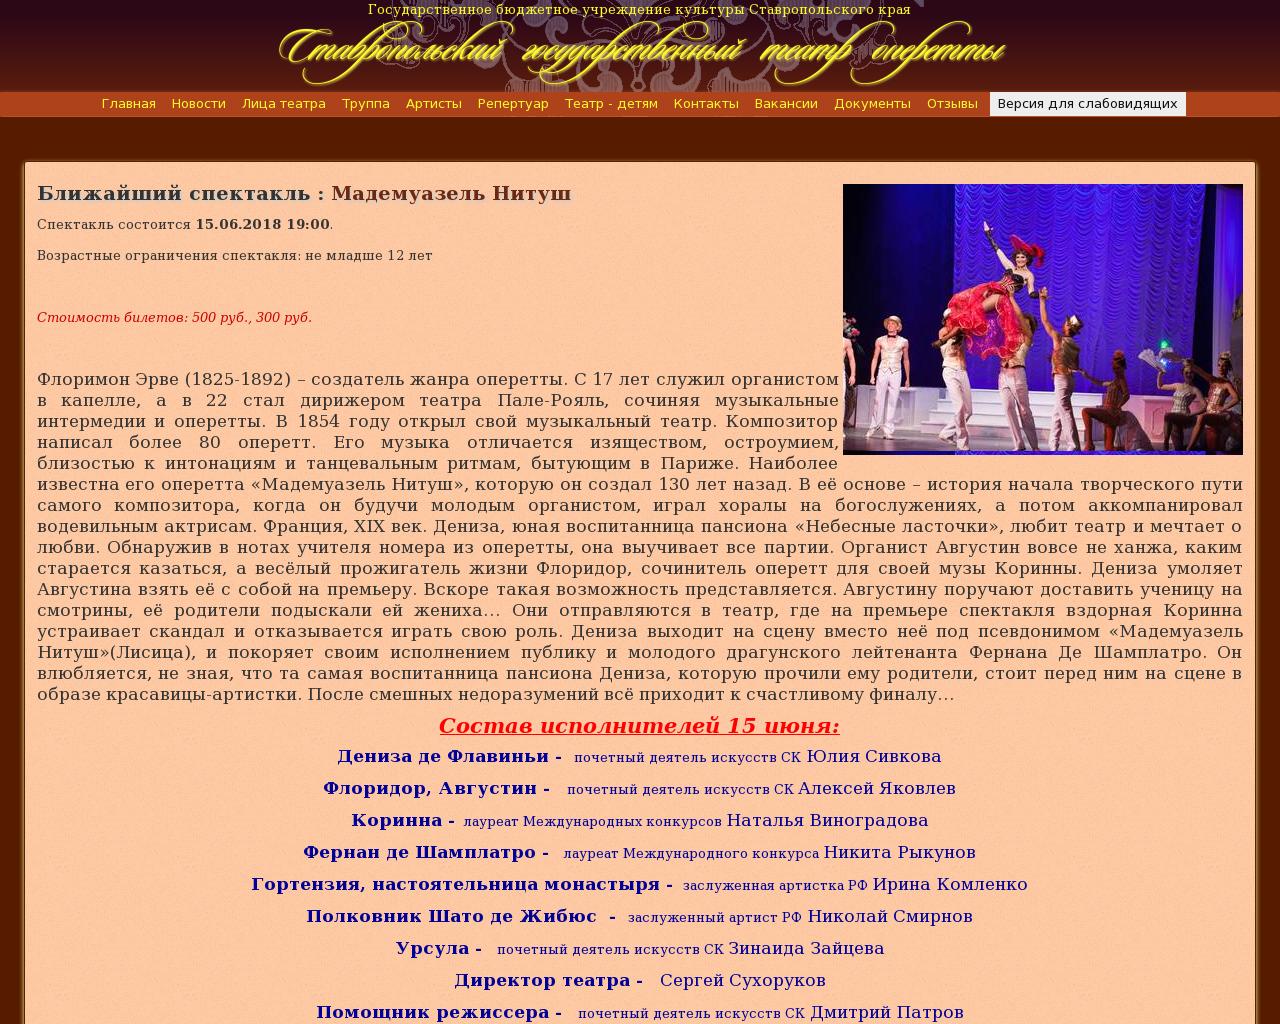 Изображение сайта operetta.su в разрешении 1280x1024